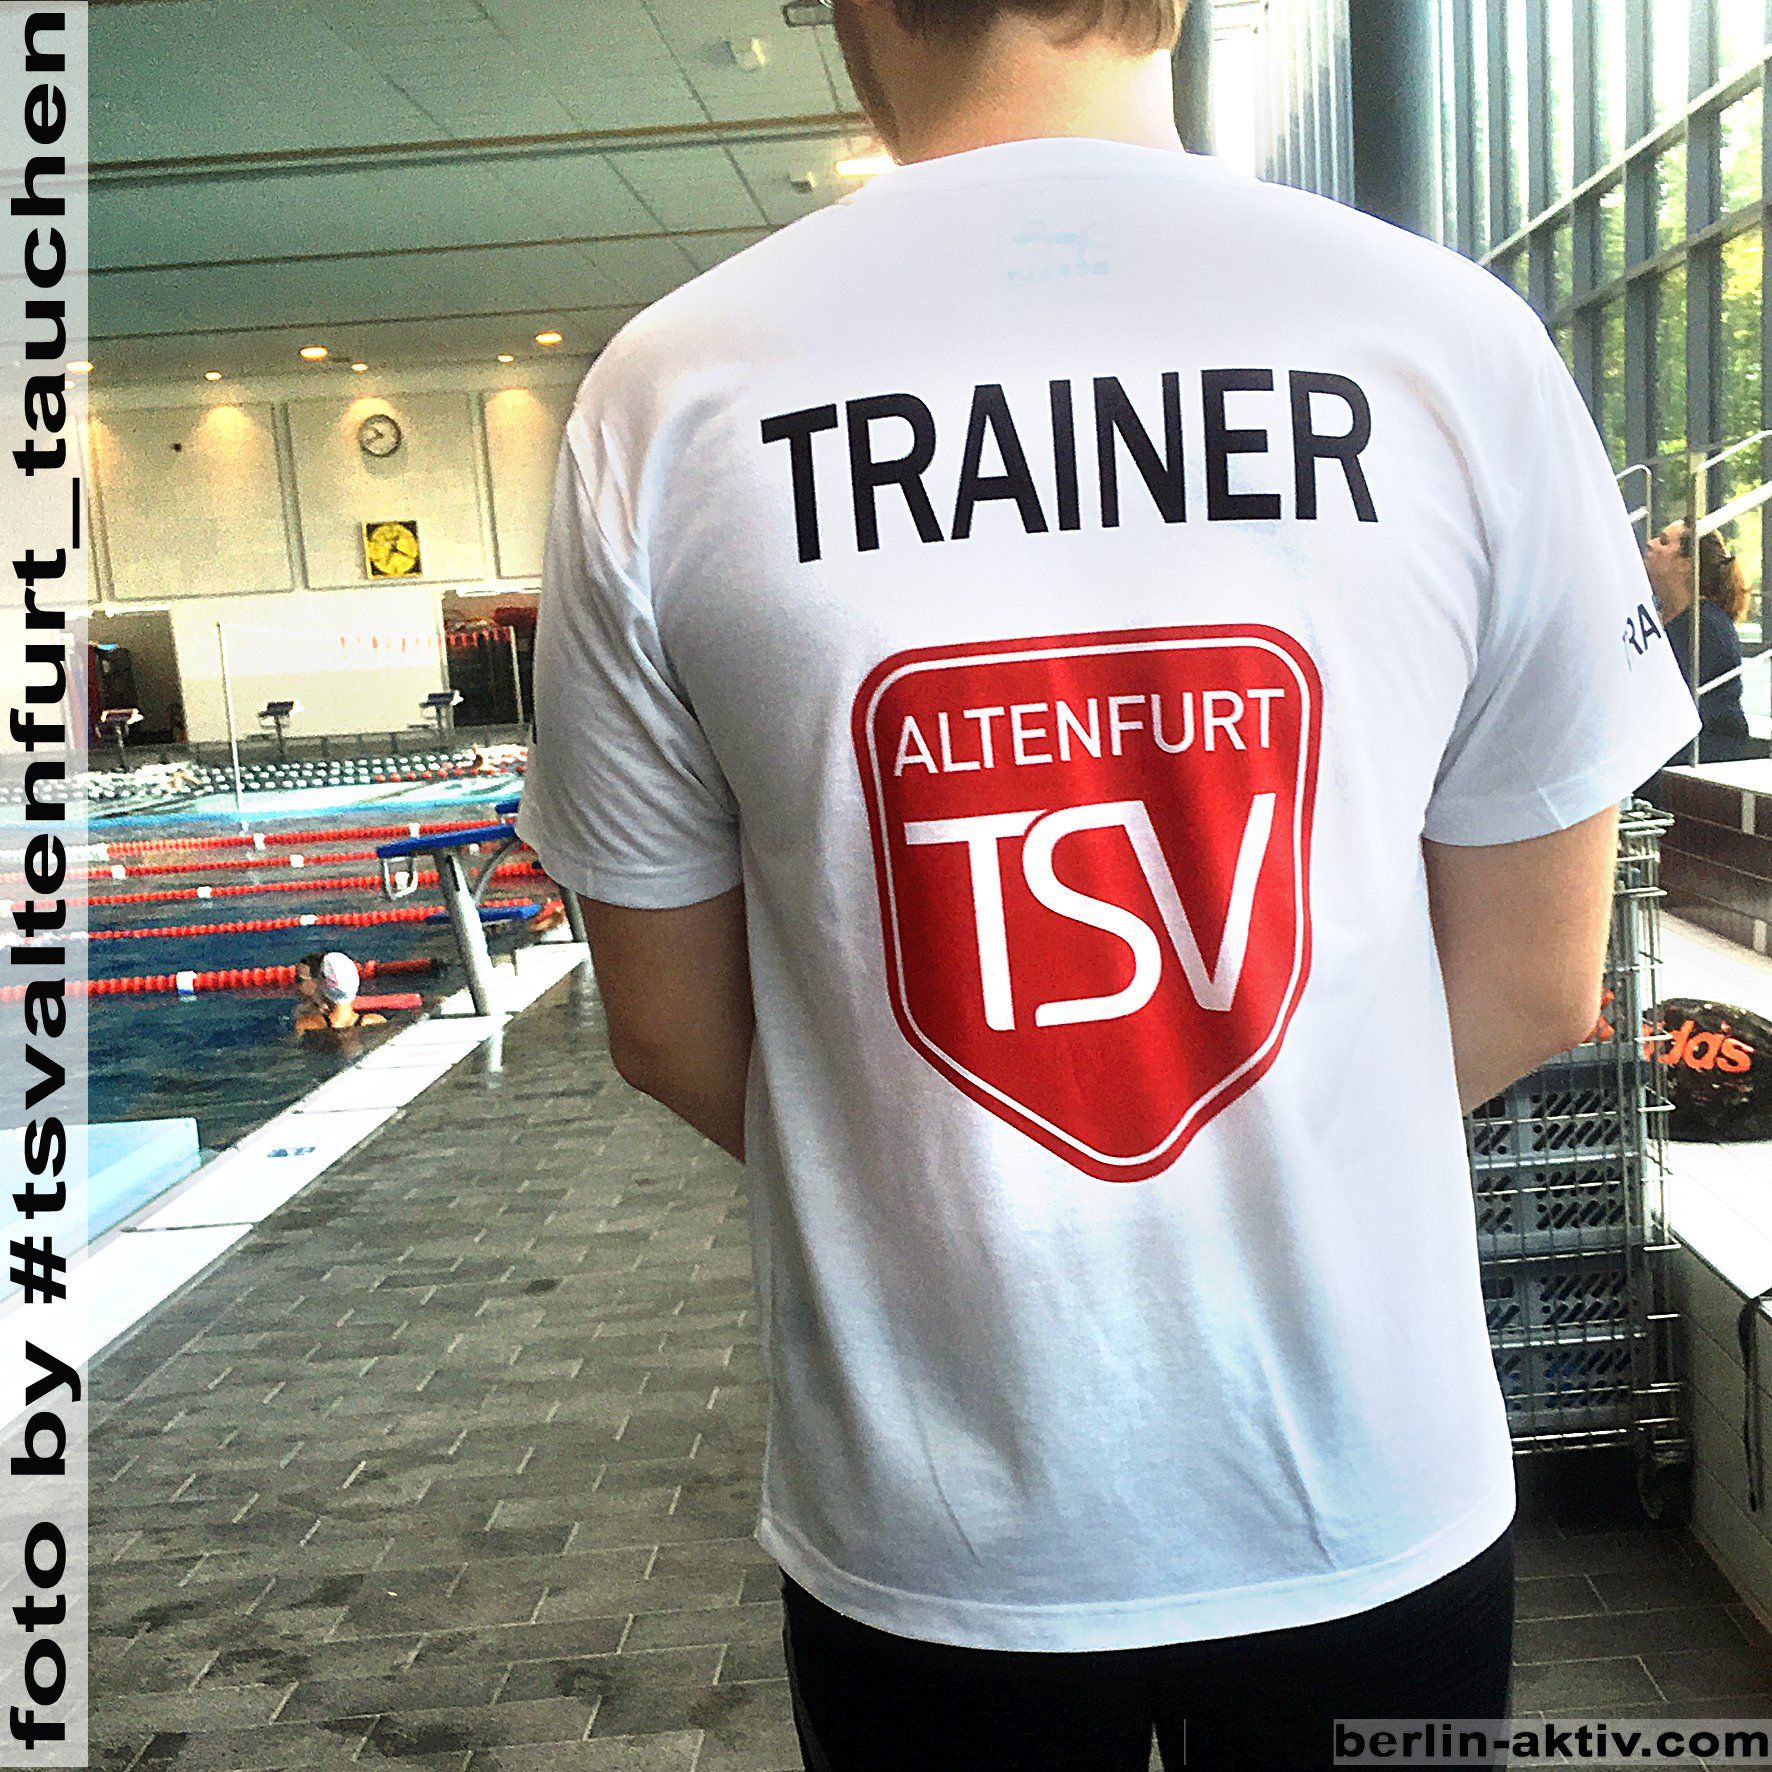 berlin-aktiv.com, Sportshirt,  Trainer-Shirt, weiß, fastdry, workwear, Vereinslogo, Druck Design, Logo TSV Altenfurt, 03